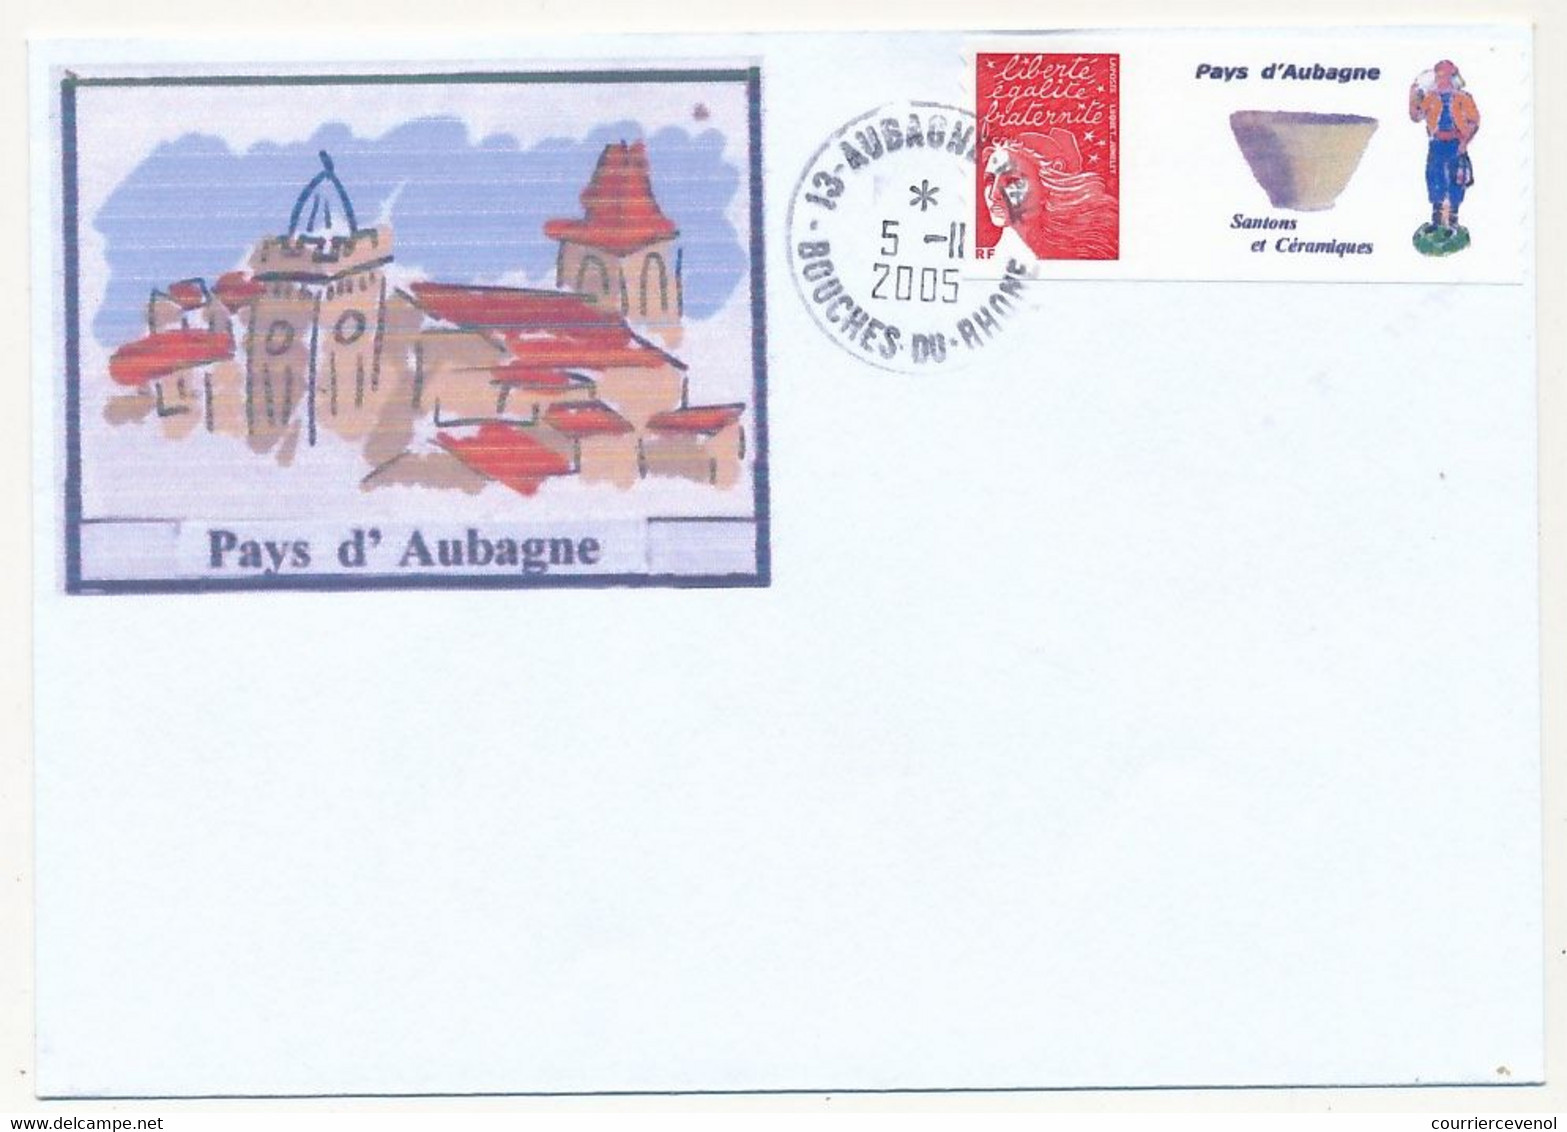 FRANCE - Enveloppe Affr. Luquet Rouge Personnalisé "Pays D'Aubagne" 5/11/2005 AUBAGNE - Non Adressée - Briefe U. Dokumente